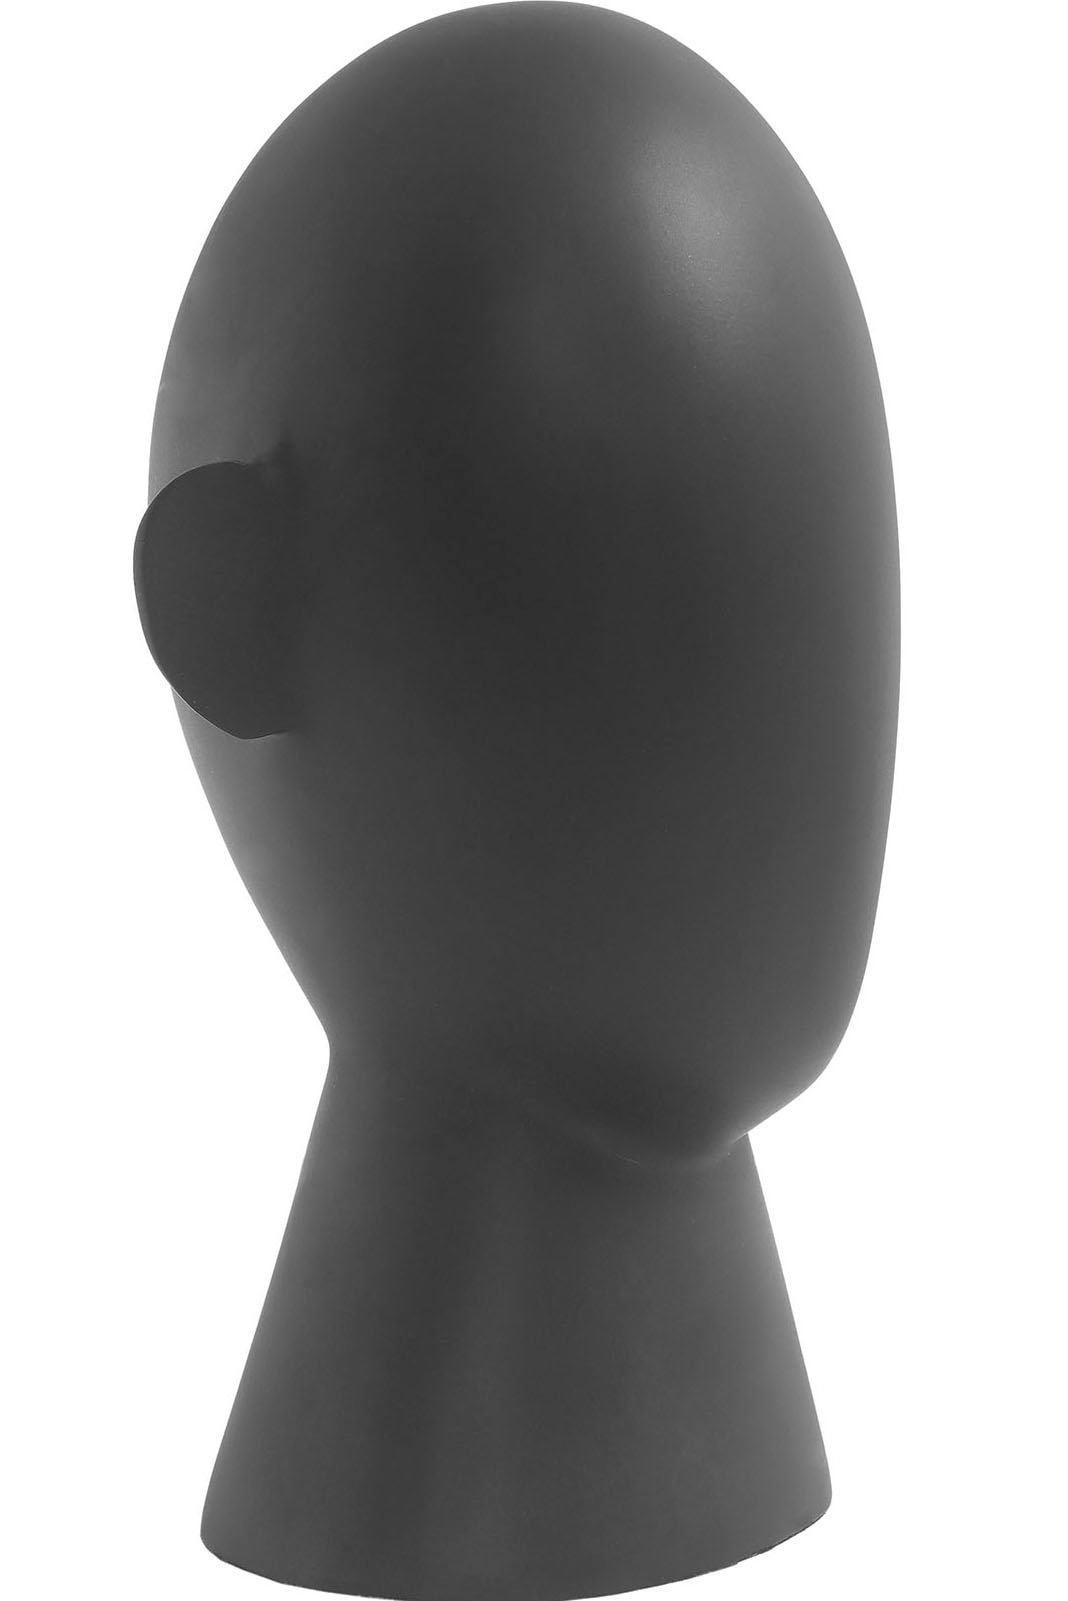 Kayoom Dekofigur »Skulptur Unid 100 Schwarz« bequem bestellen